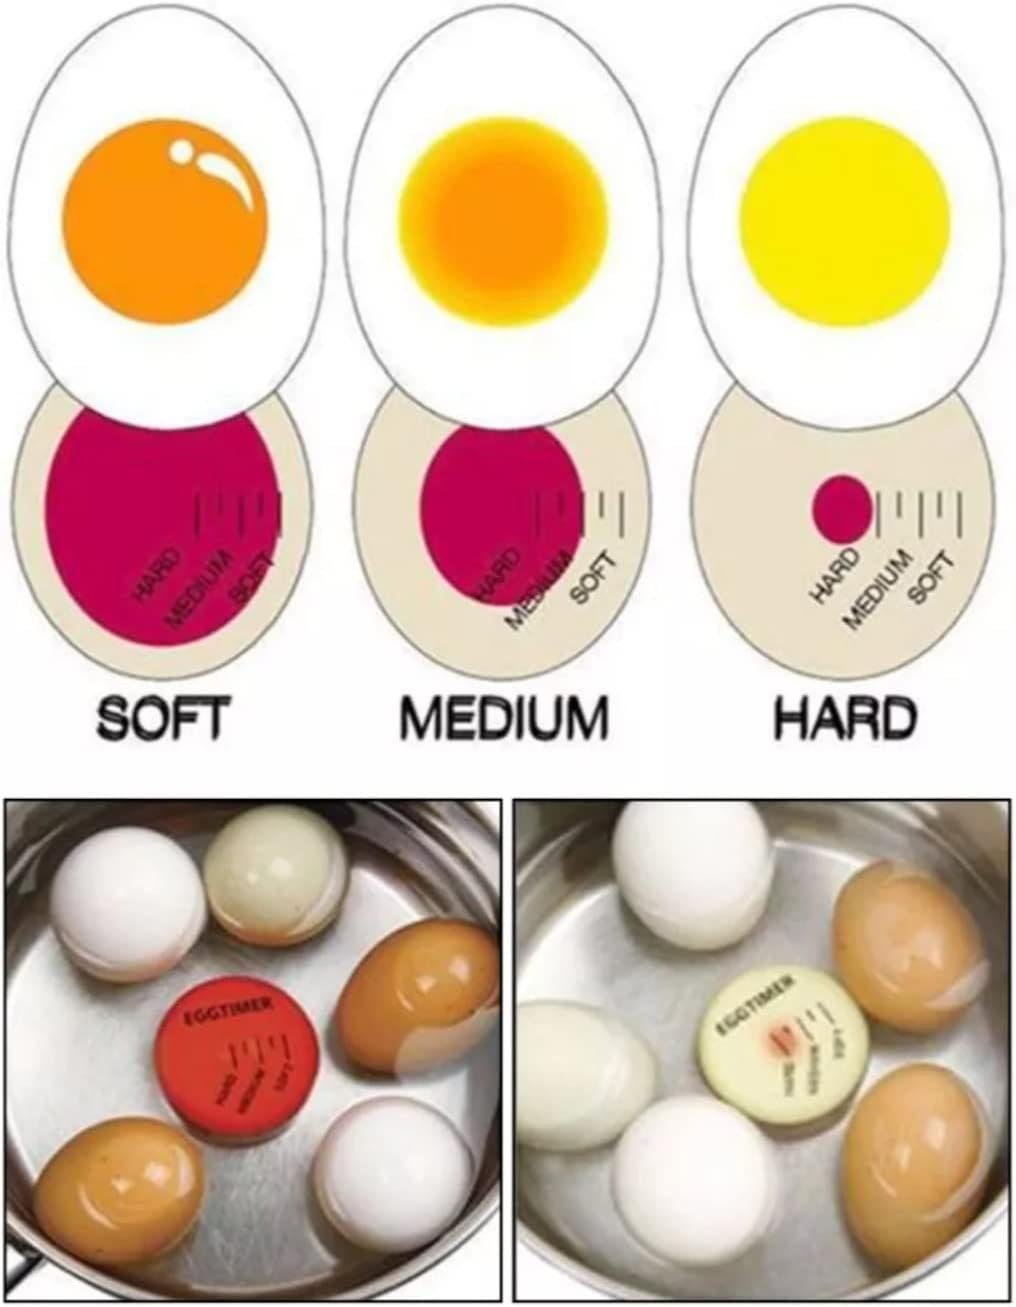 Eier, lustiger Timer für Anzeige mit Eieruhr Rot gekochte Farbwechsel, Eieruhr,Egg hart/medium/weich,wiederverwendbar autolock Eierkocher,Timer